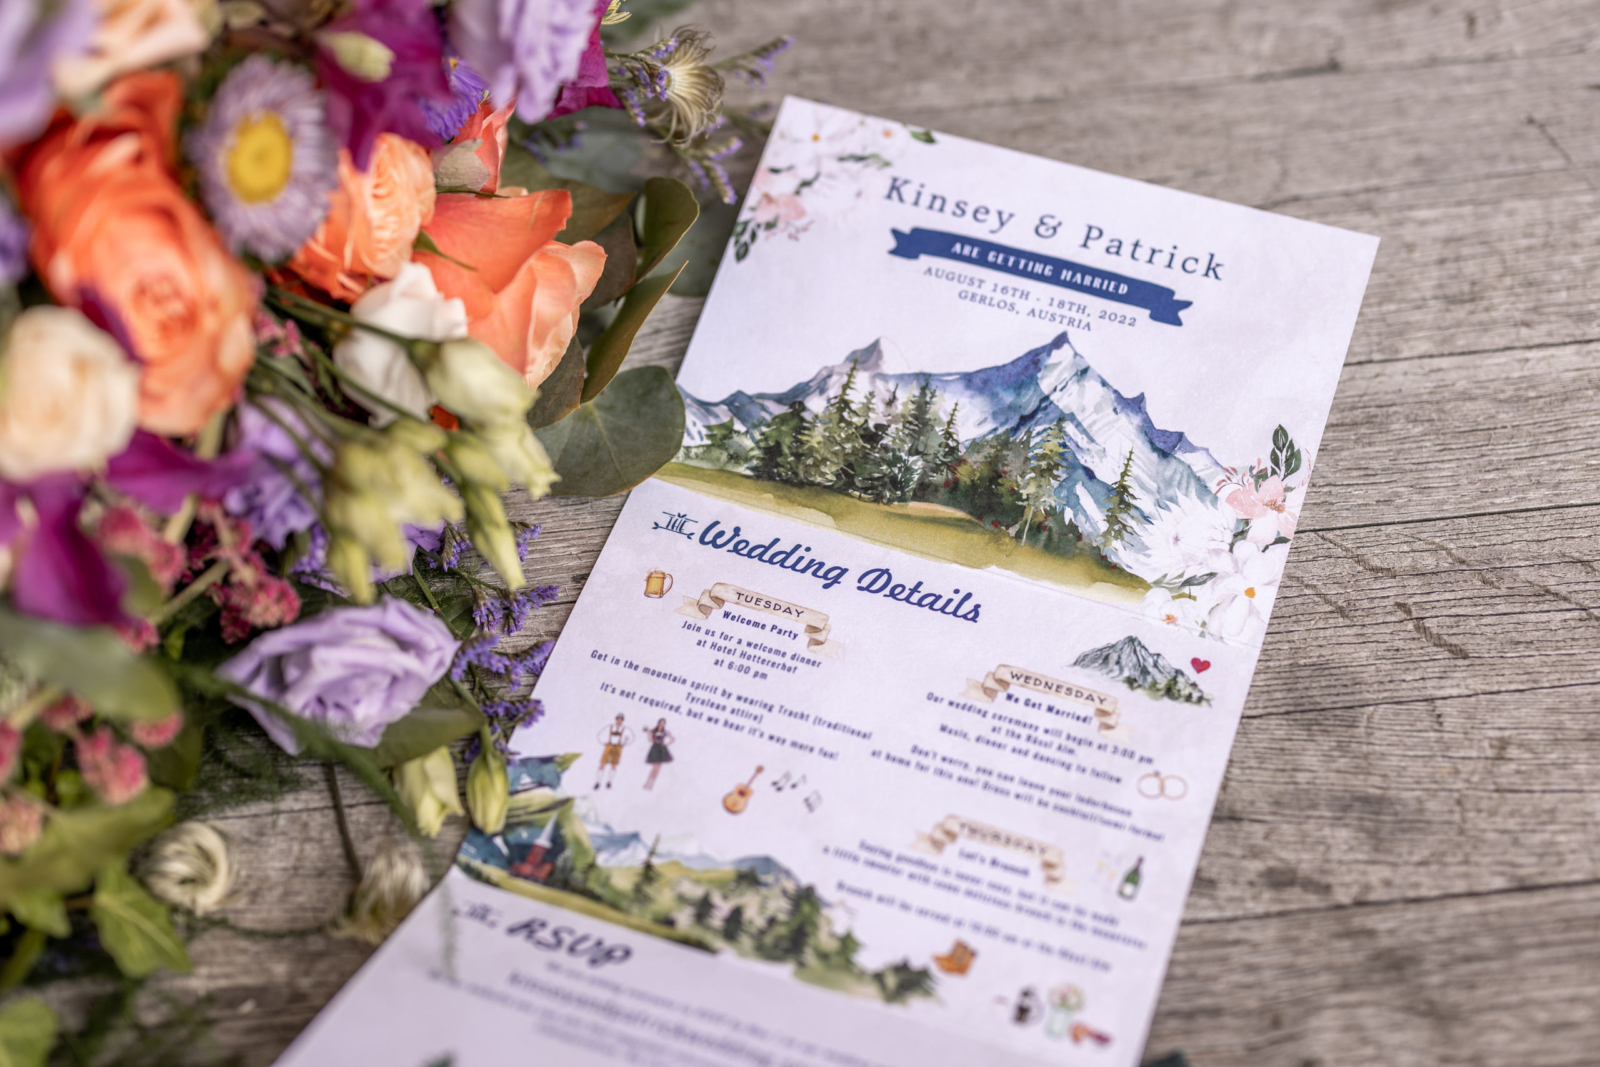 beautiful invitation to A Beautiful Wedding at Rössl Alm in Zillertal